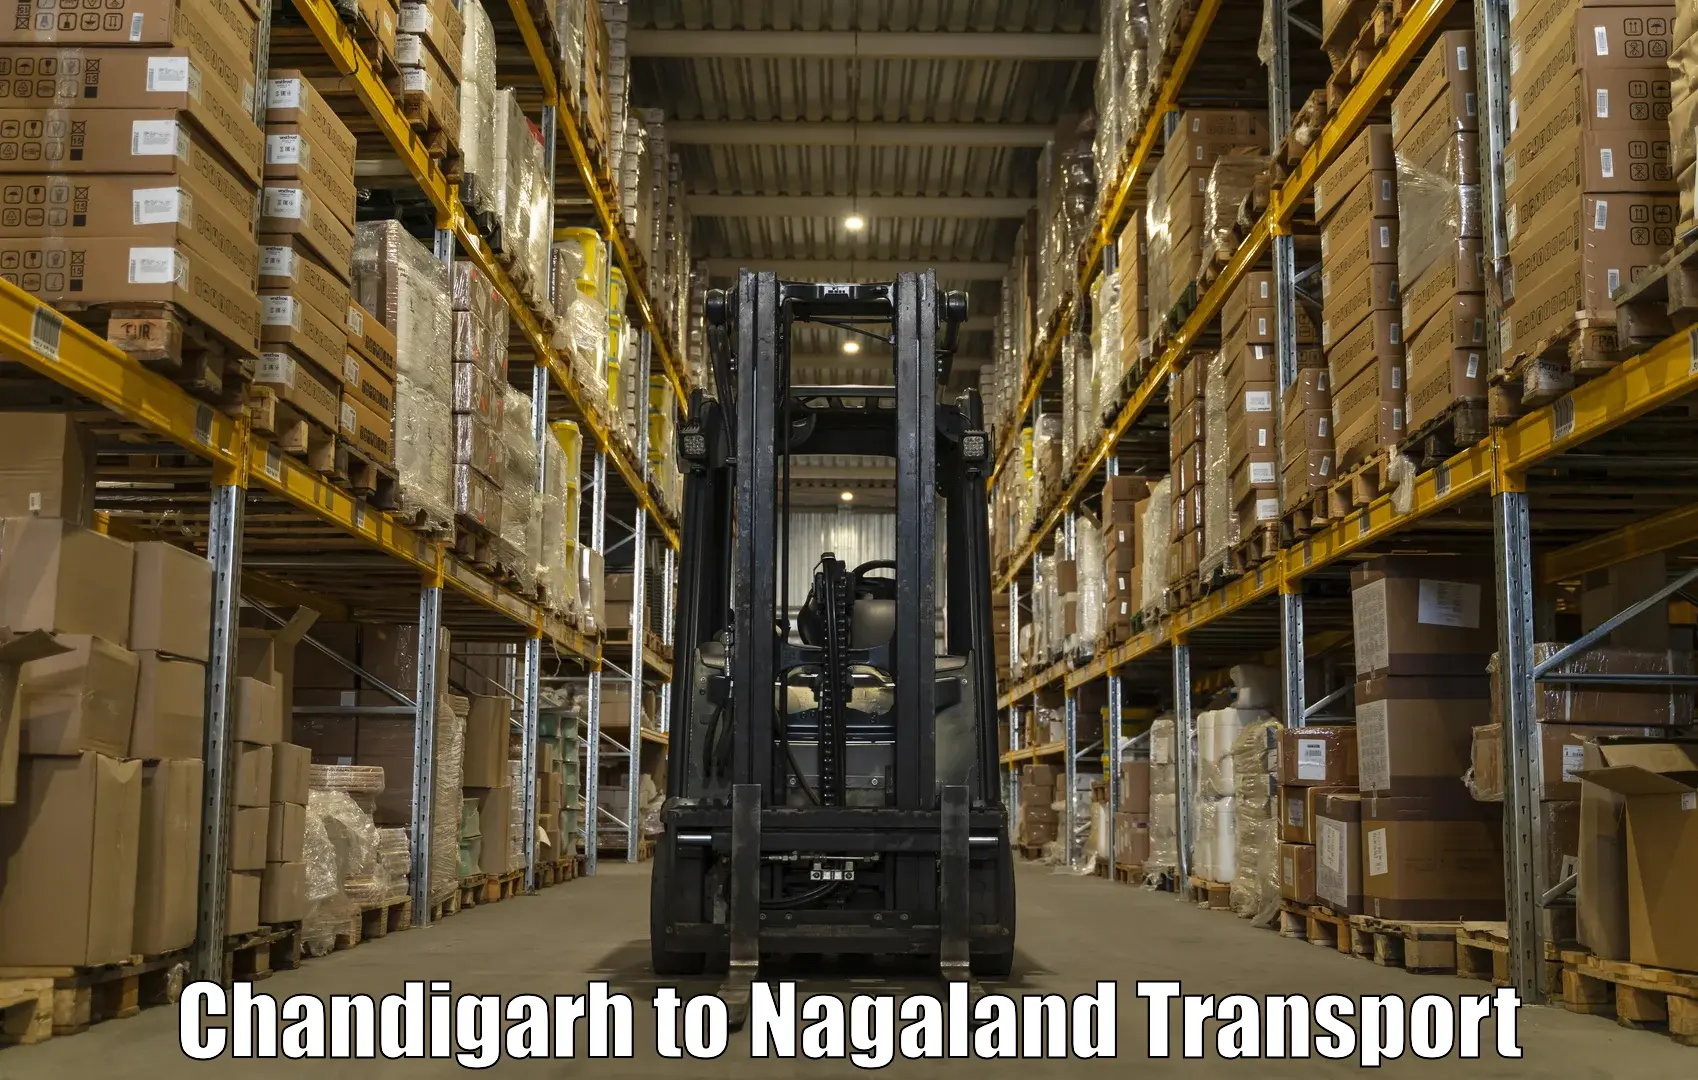 Interstate transport services Chandigarh to Dimapur